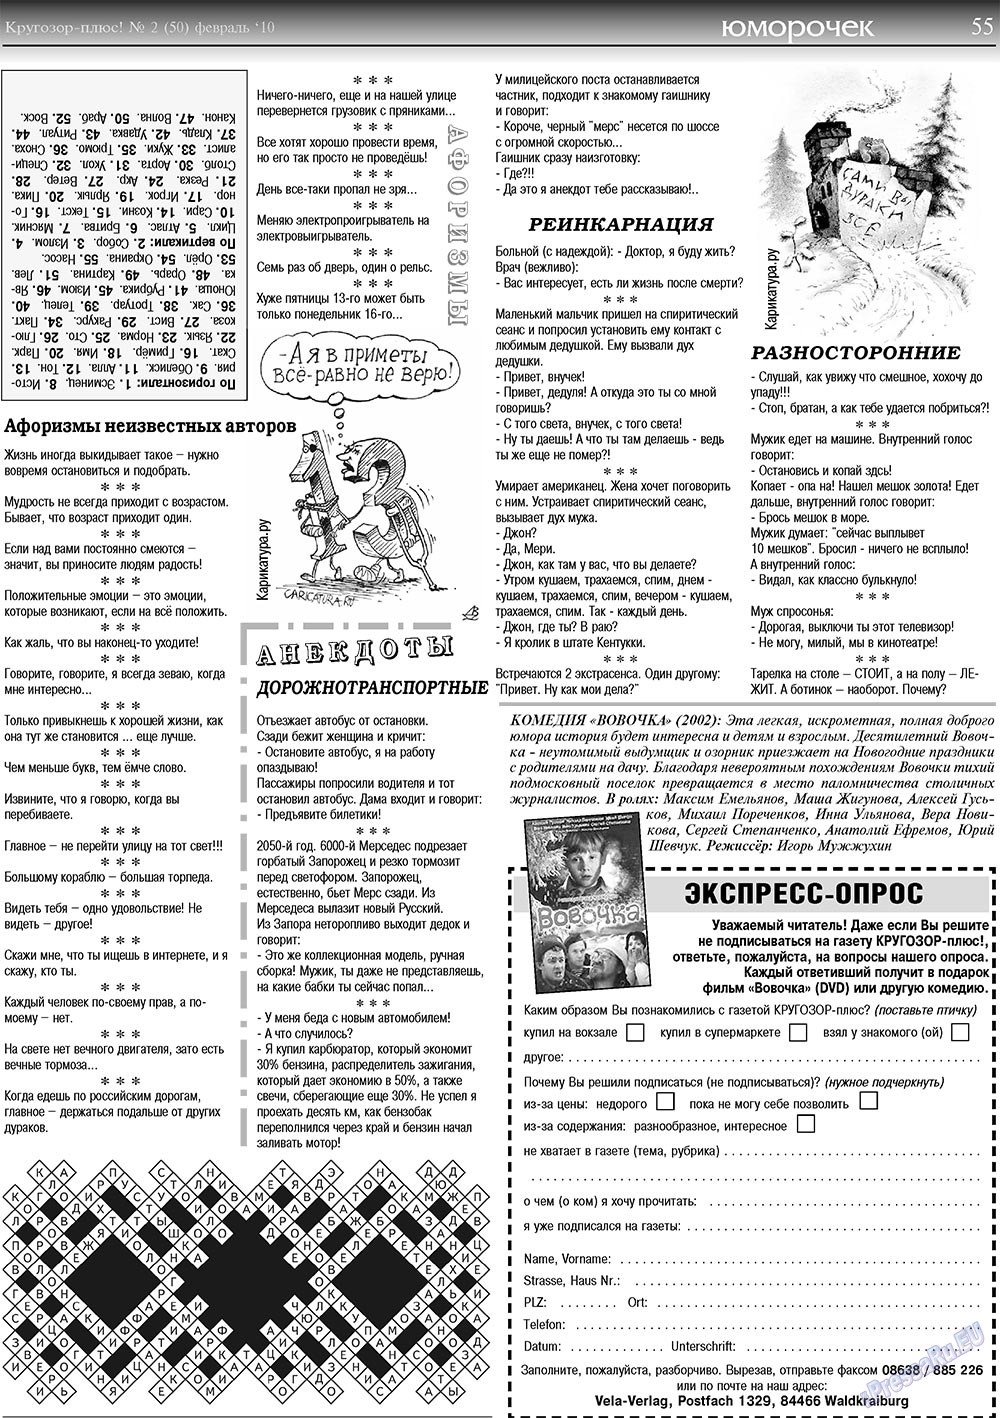 Кругозор плюс!, газета. 2010 №2 стр.55